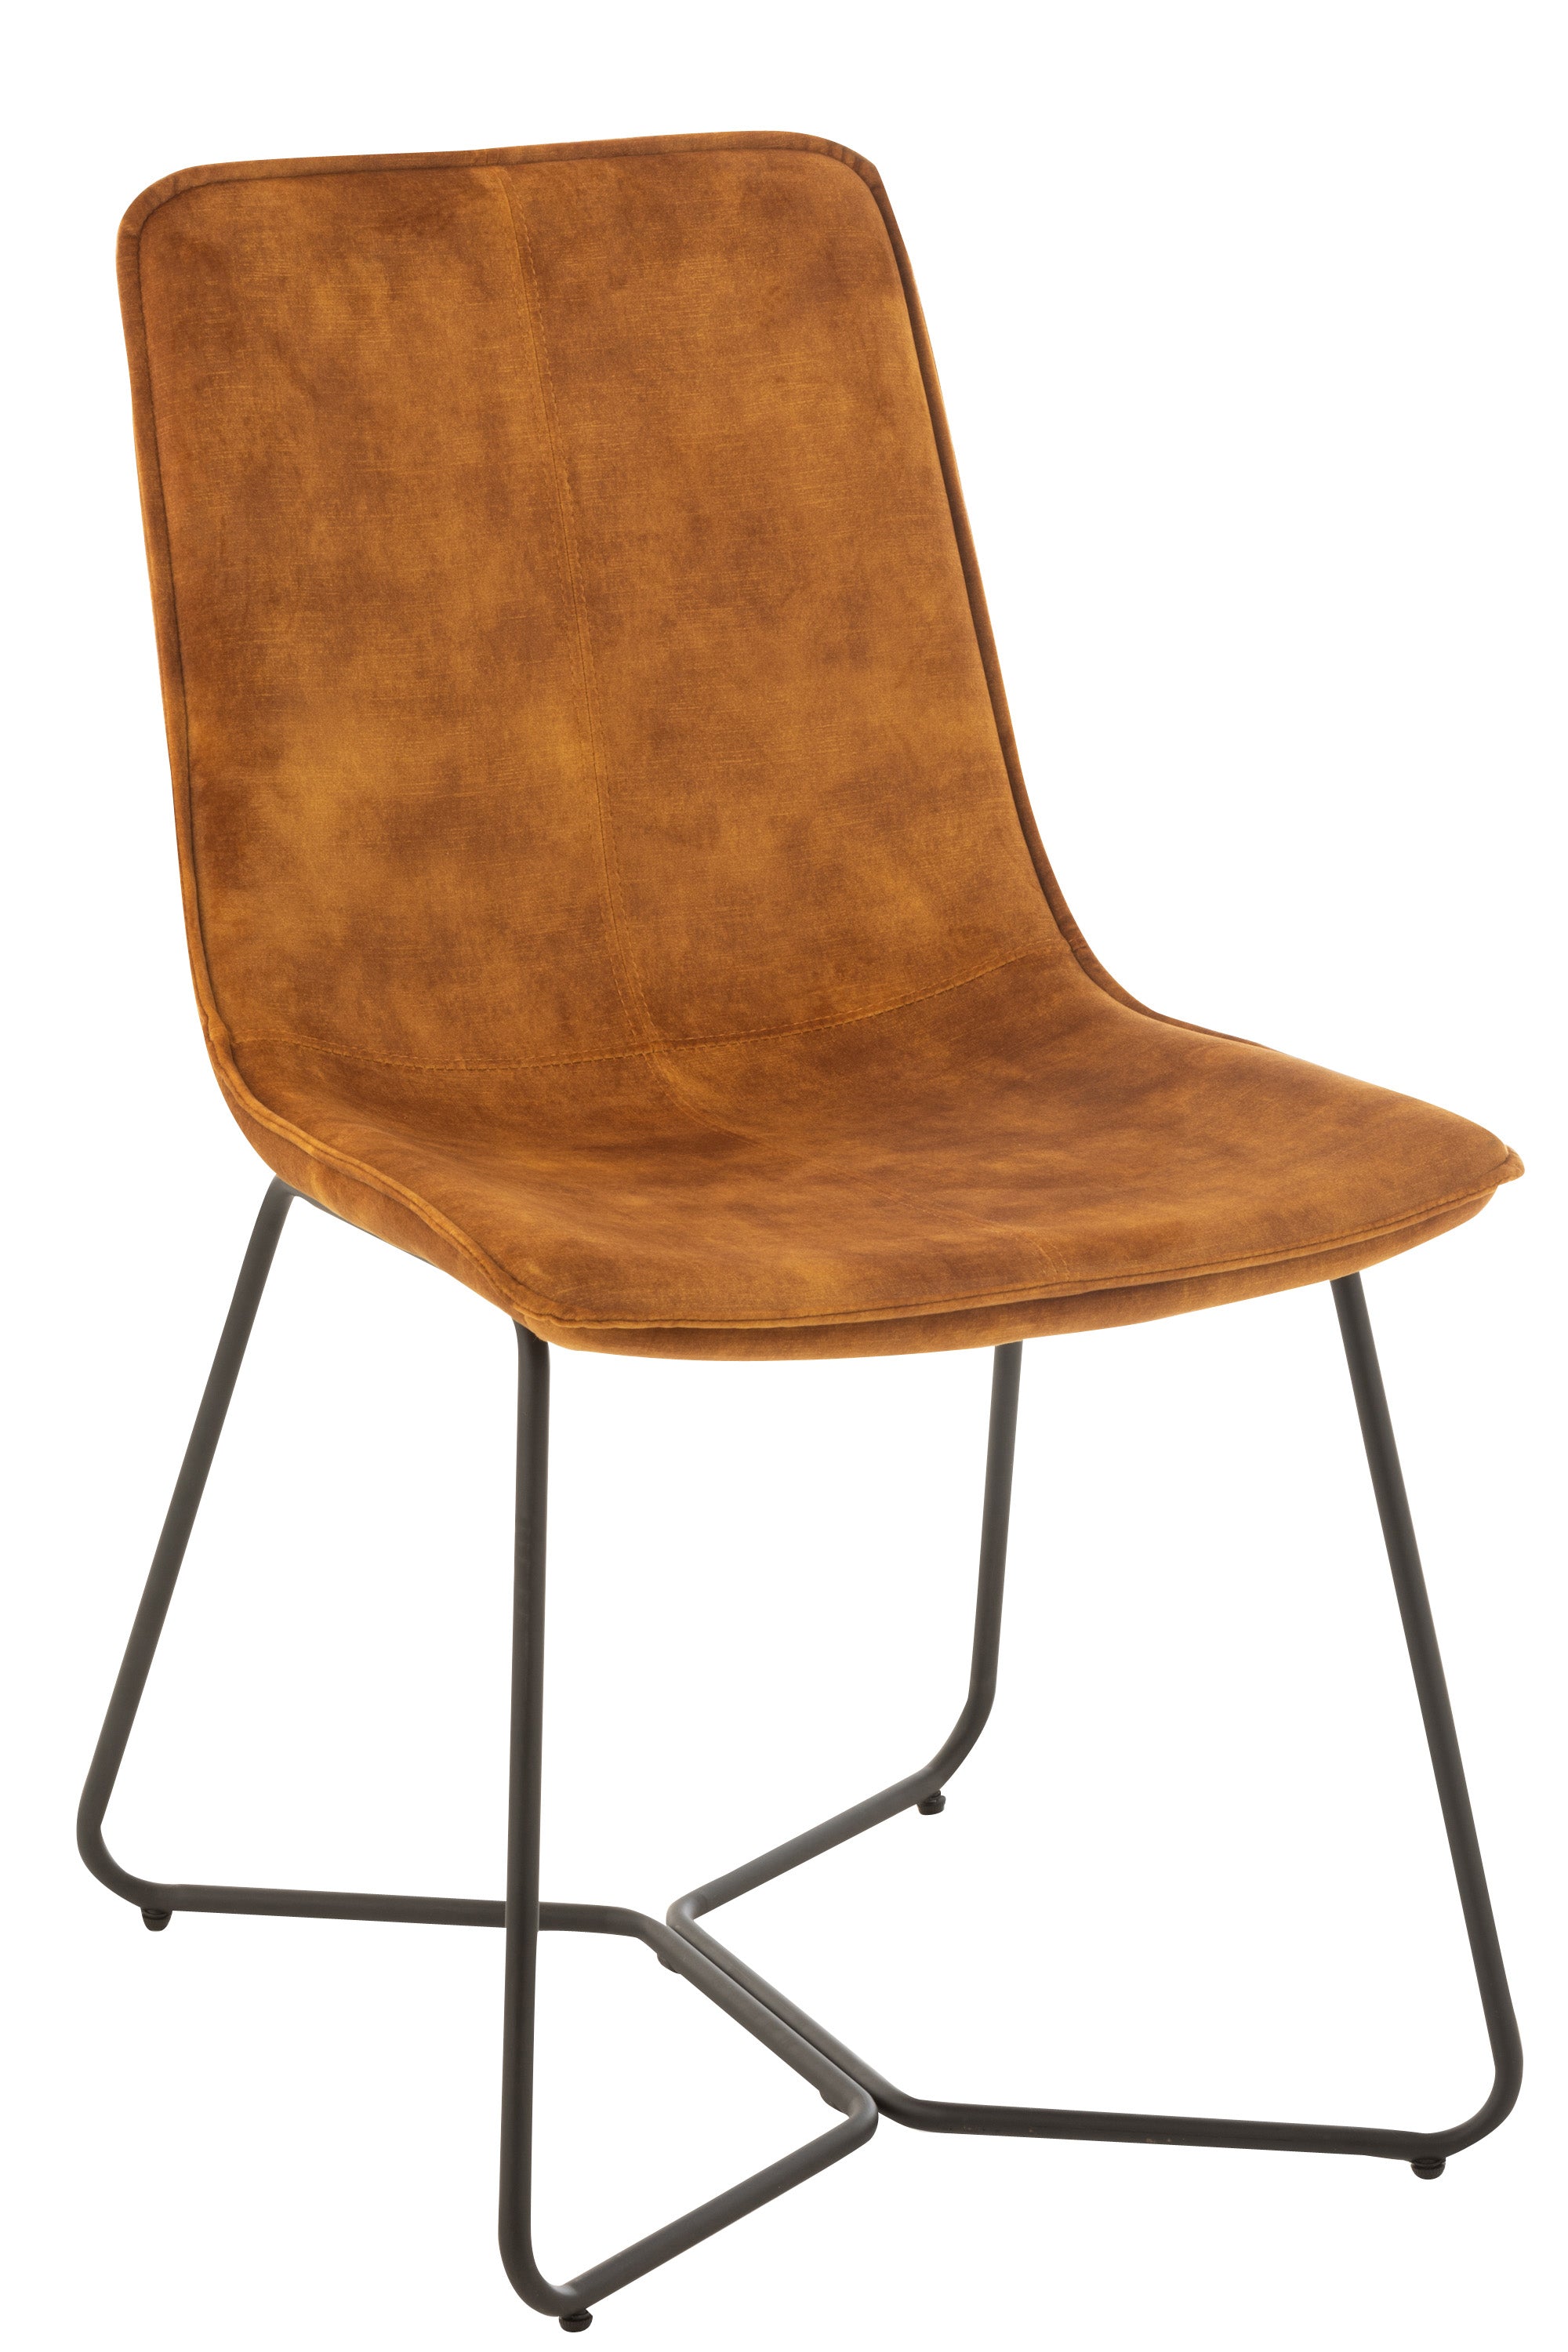 Stuhl mit schwarzem, kufenartigen Metallgestell, darauf eine gepolsterte Sitzschale, bezogen mit ockerfarbener Mikrofaser, Sitzschale in der Formgebung rechteckig, Lehne leicht nach hinten geneigt, Sitzfläche leicht vertieft.